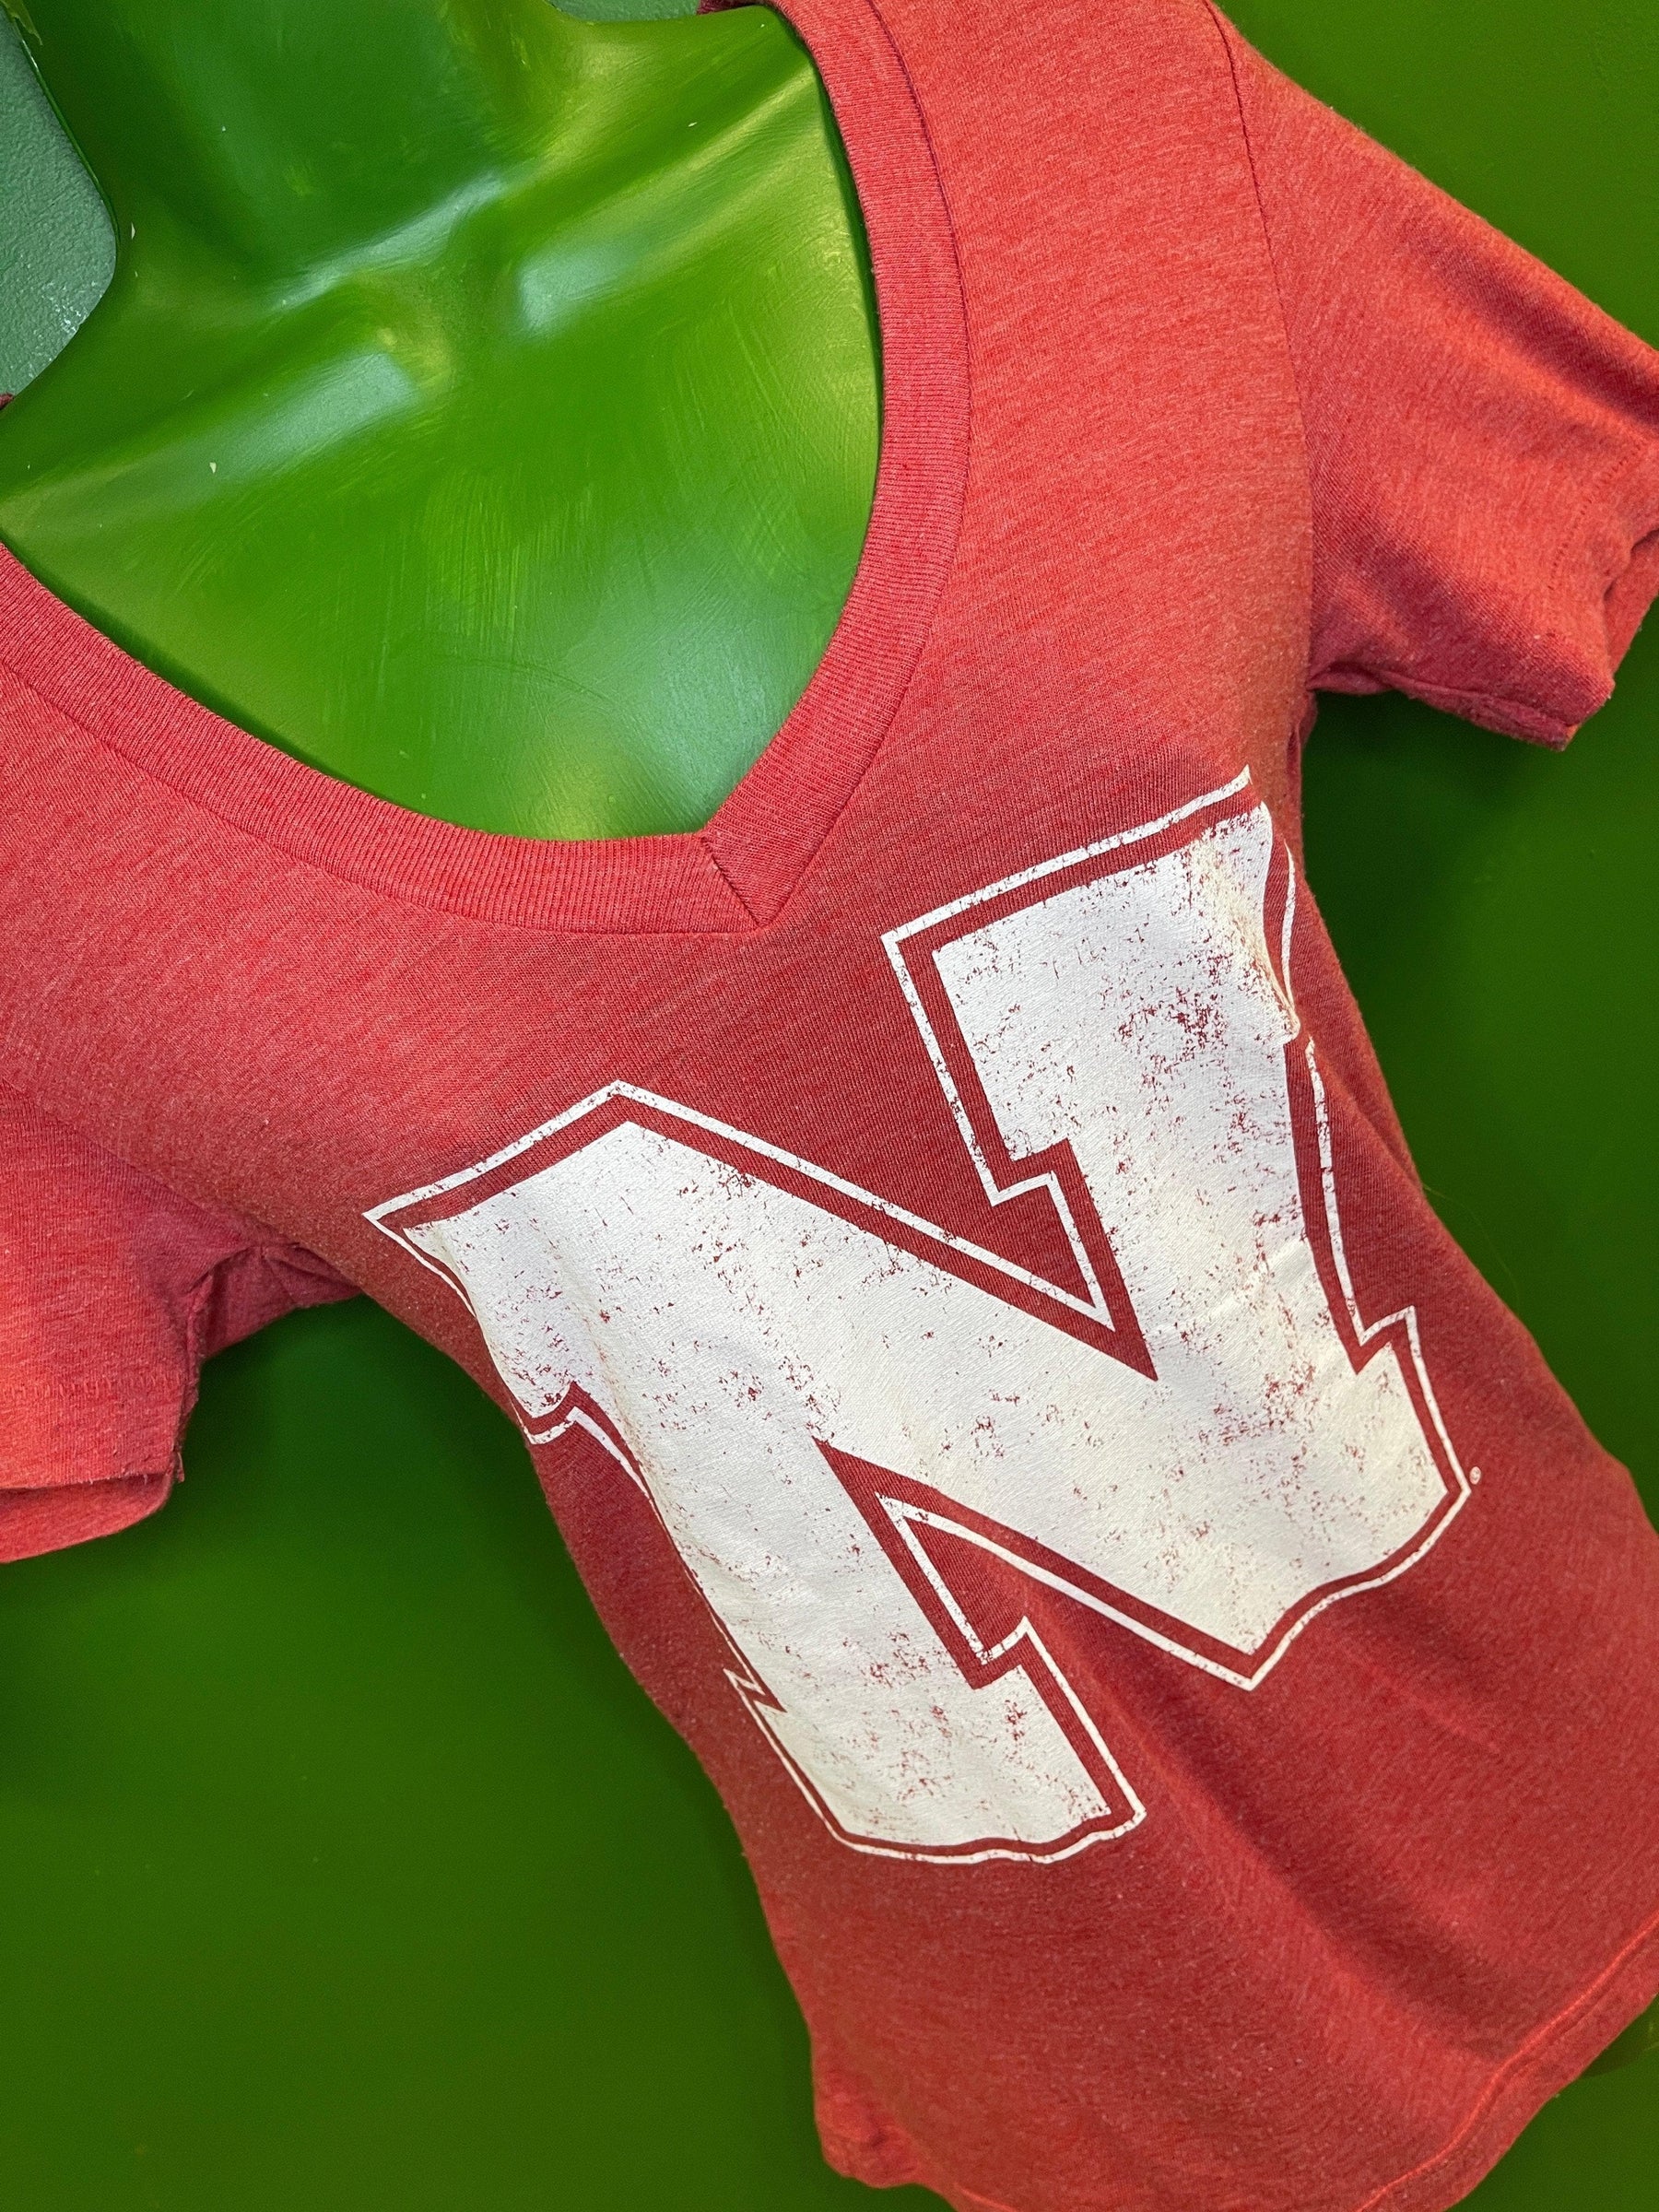 NCAA Nebraska Cornhuskers Heathered Red T-Shirt Women's Medium